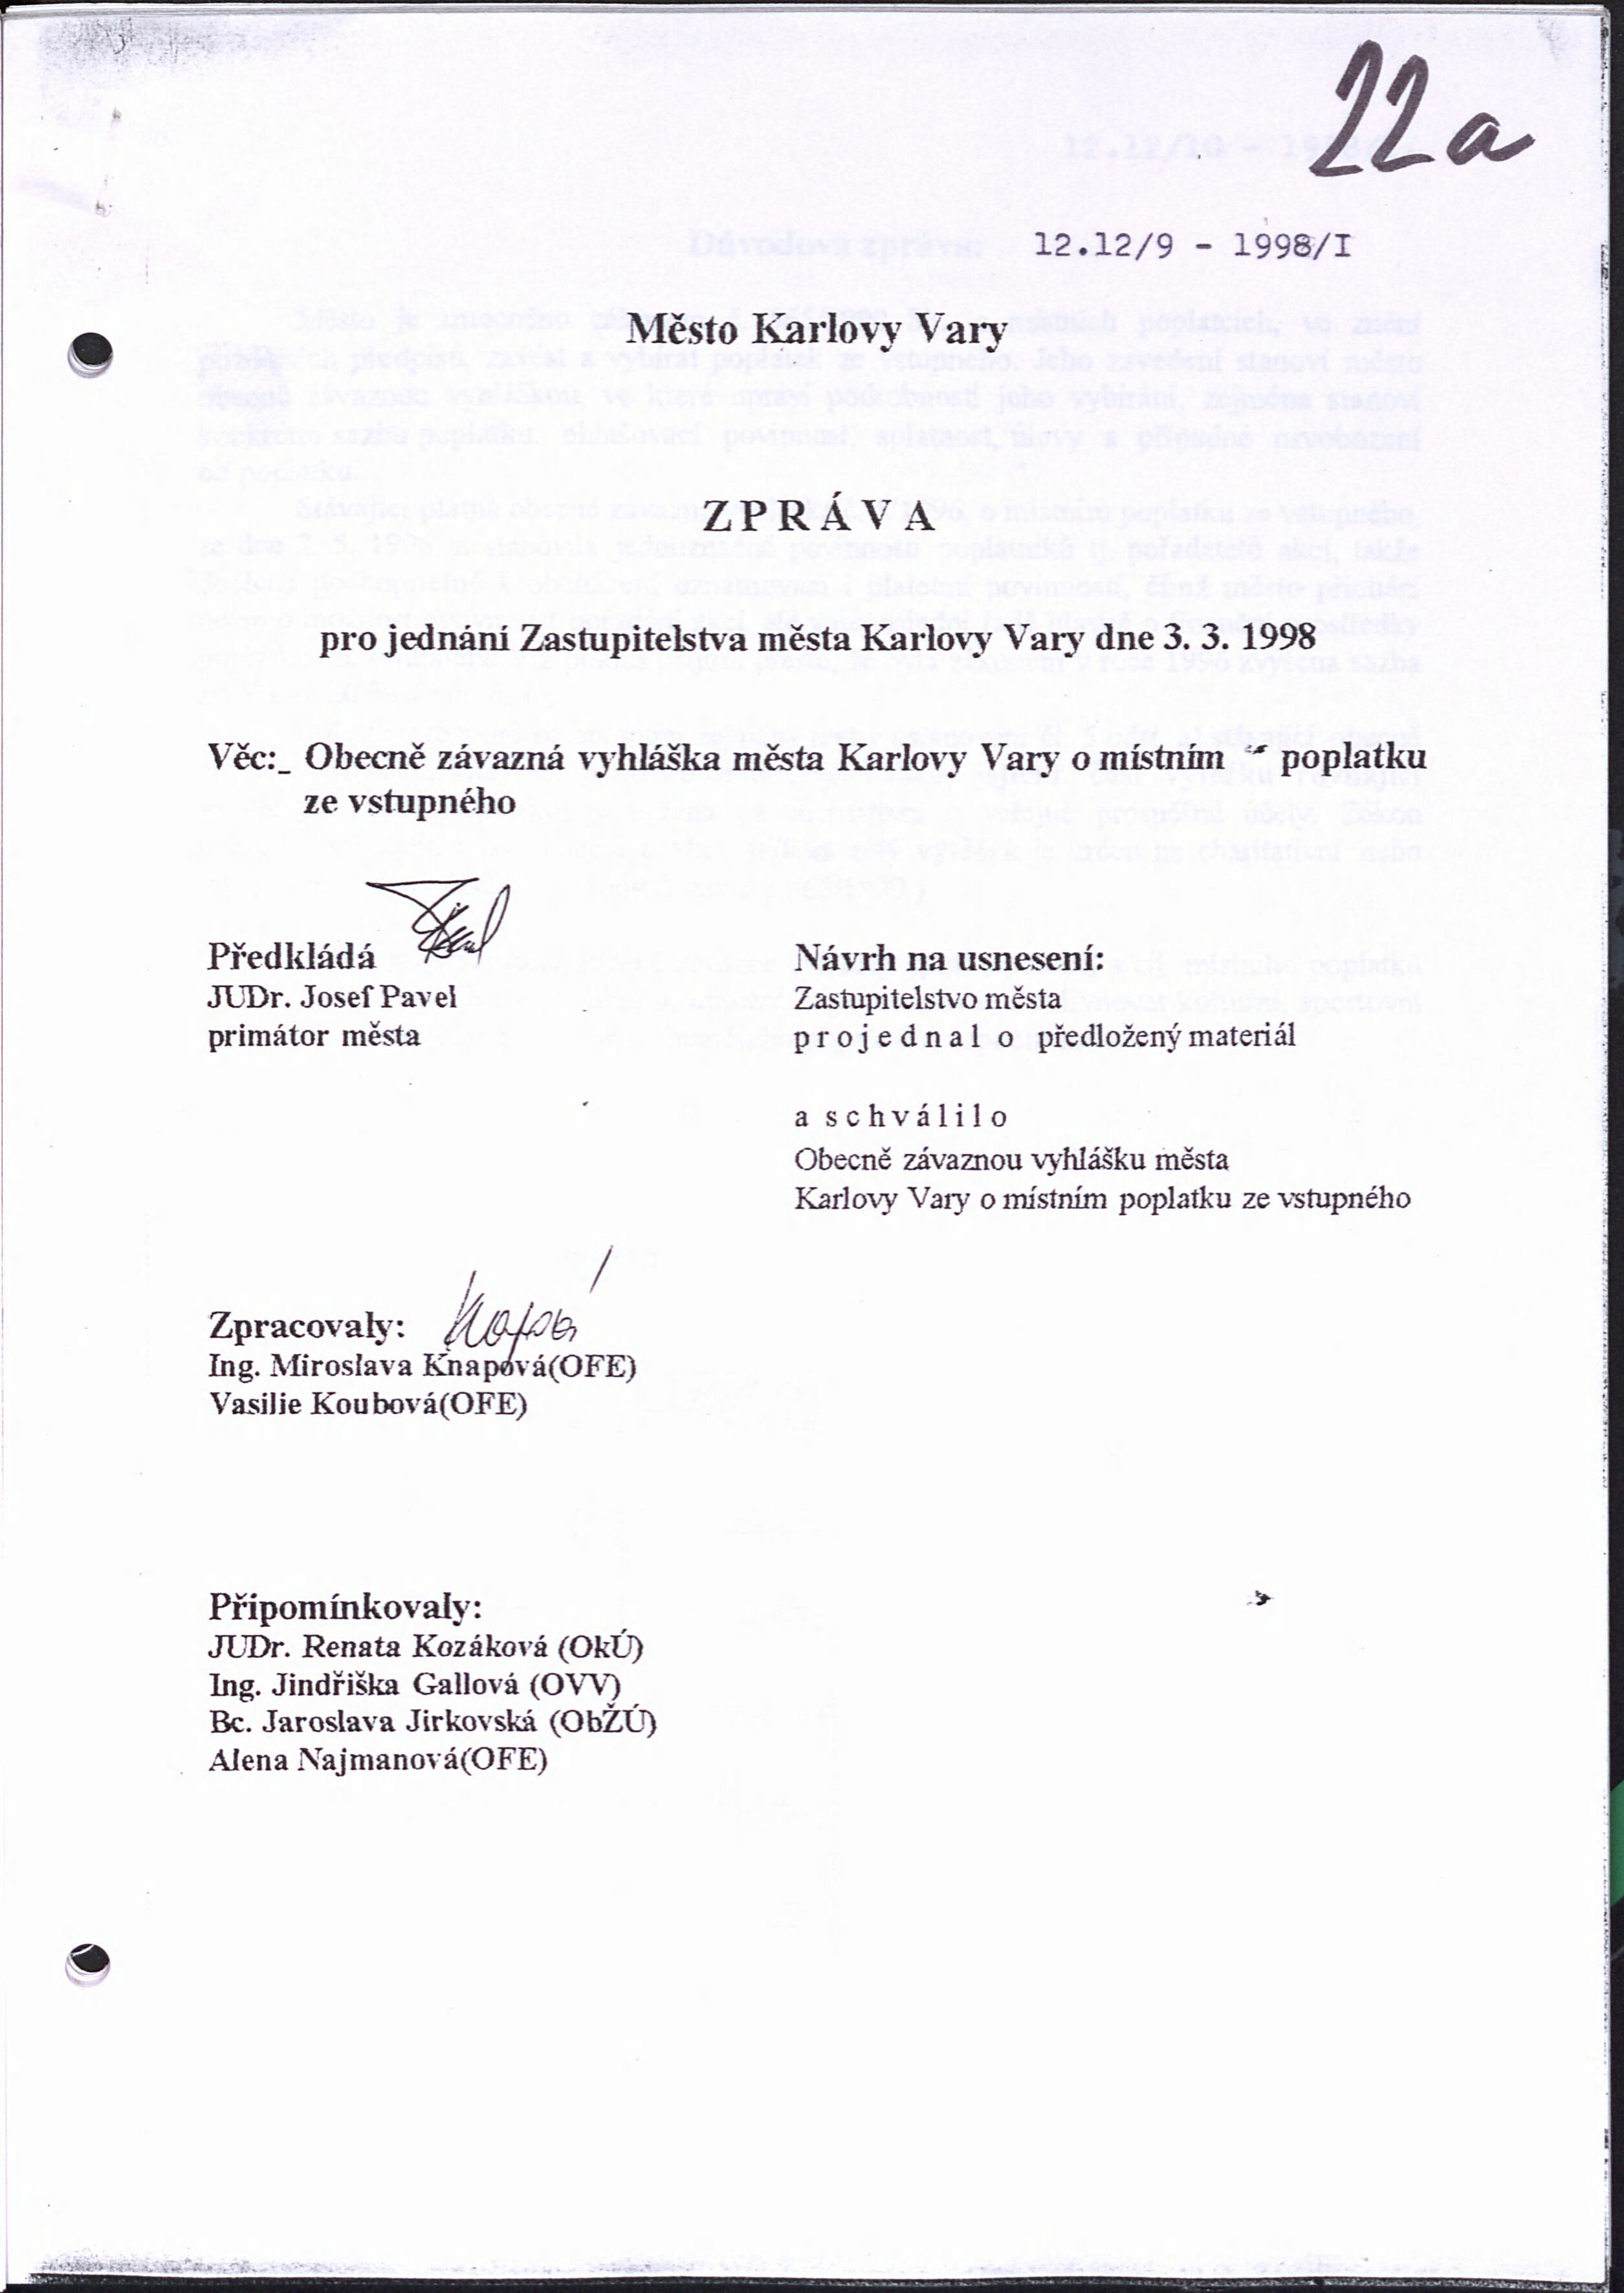 270. soap-kv_01494_mesto-karlovy-vary-1998-1_2690